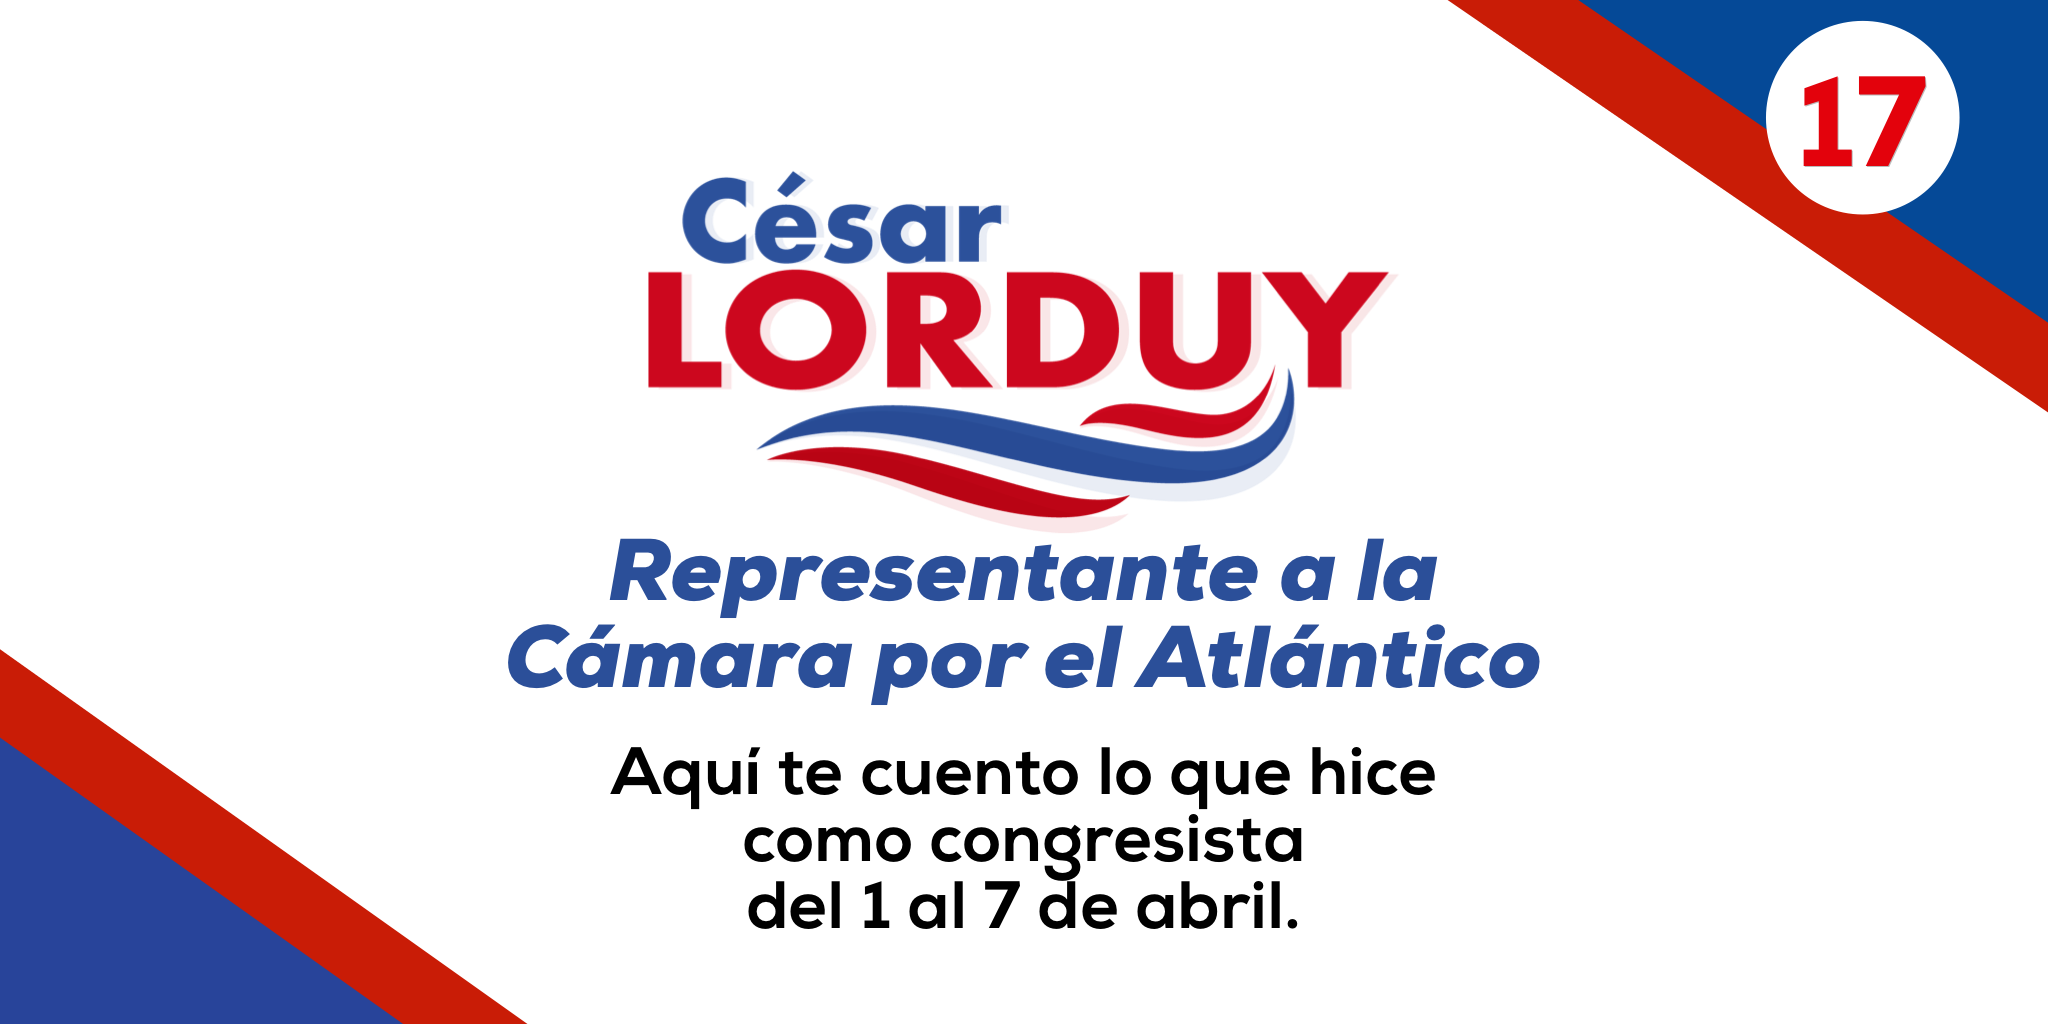 Informe de gestión No. 17 del Representante a la Cámara por el departamento del Atlántico, Cesar Lorduy 2